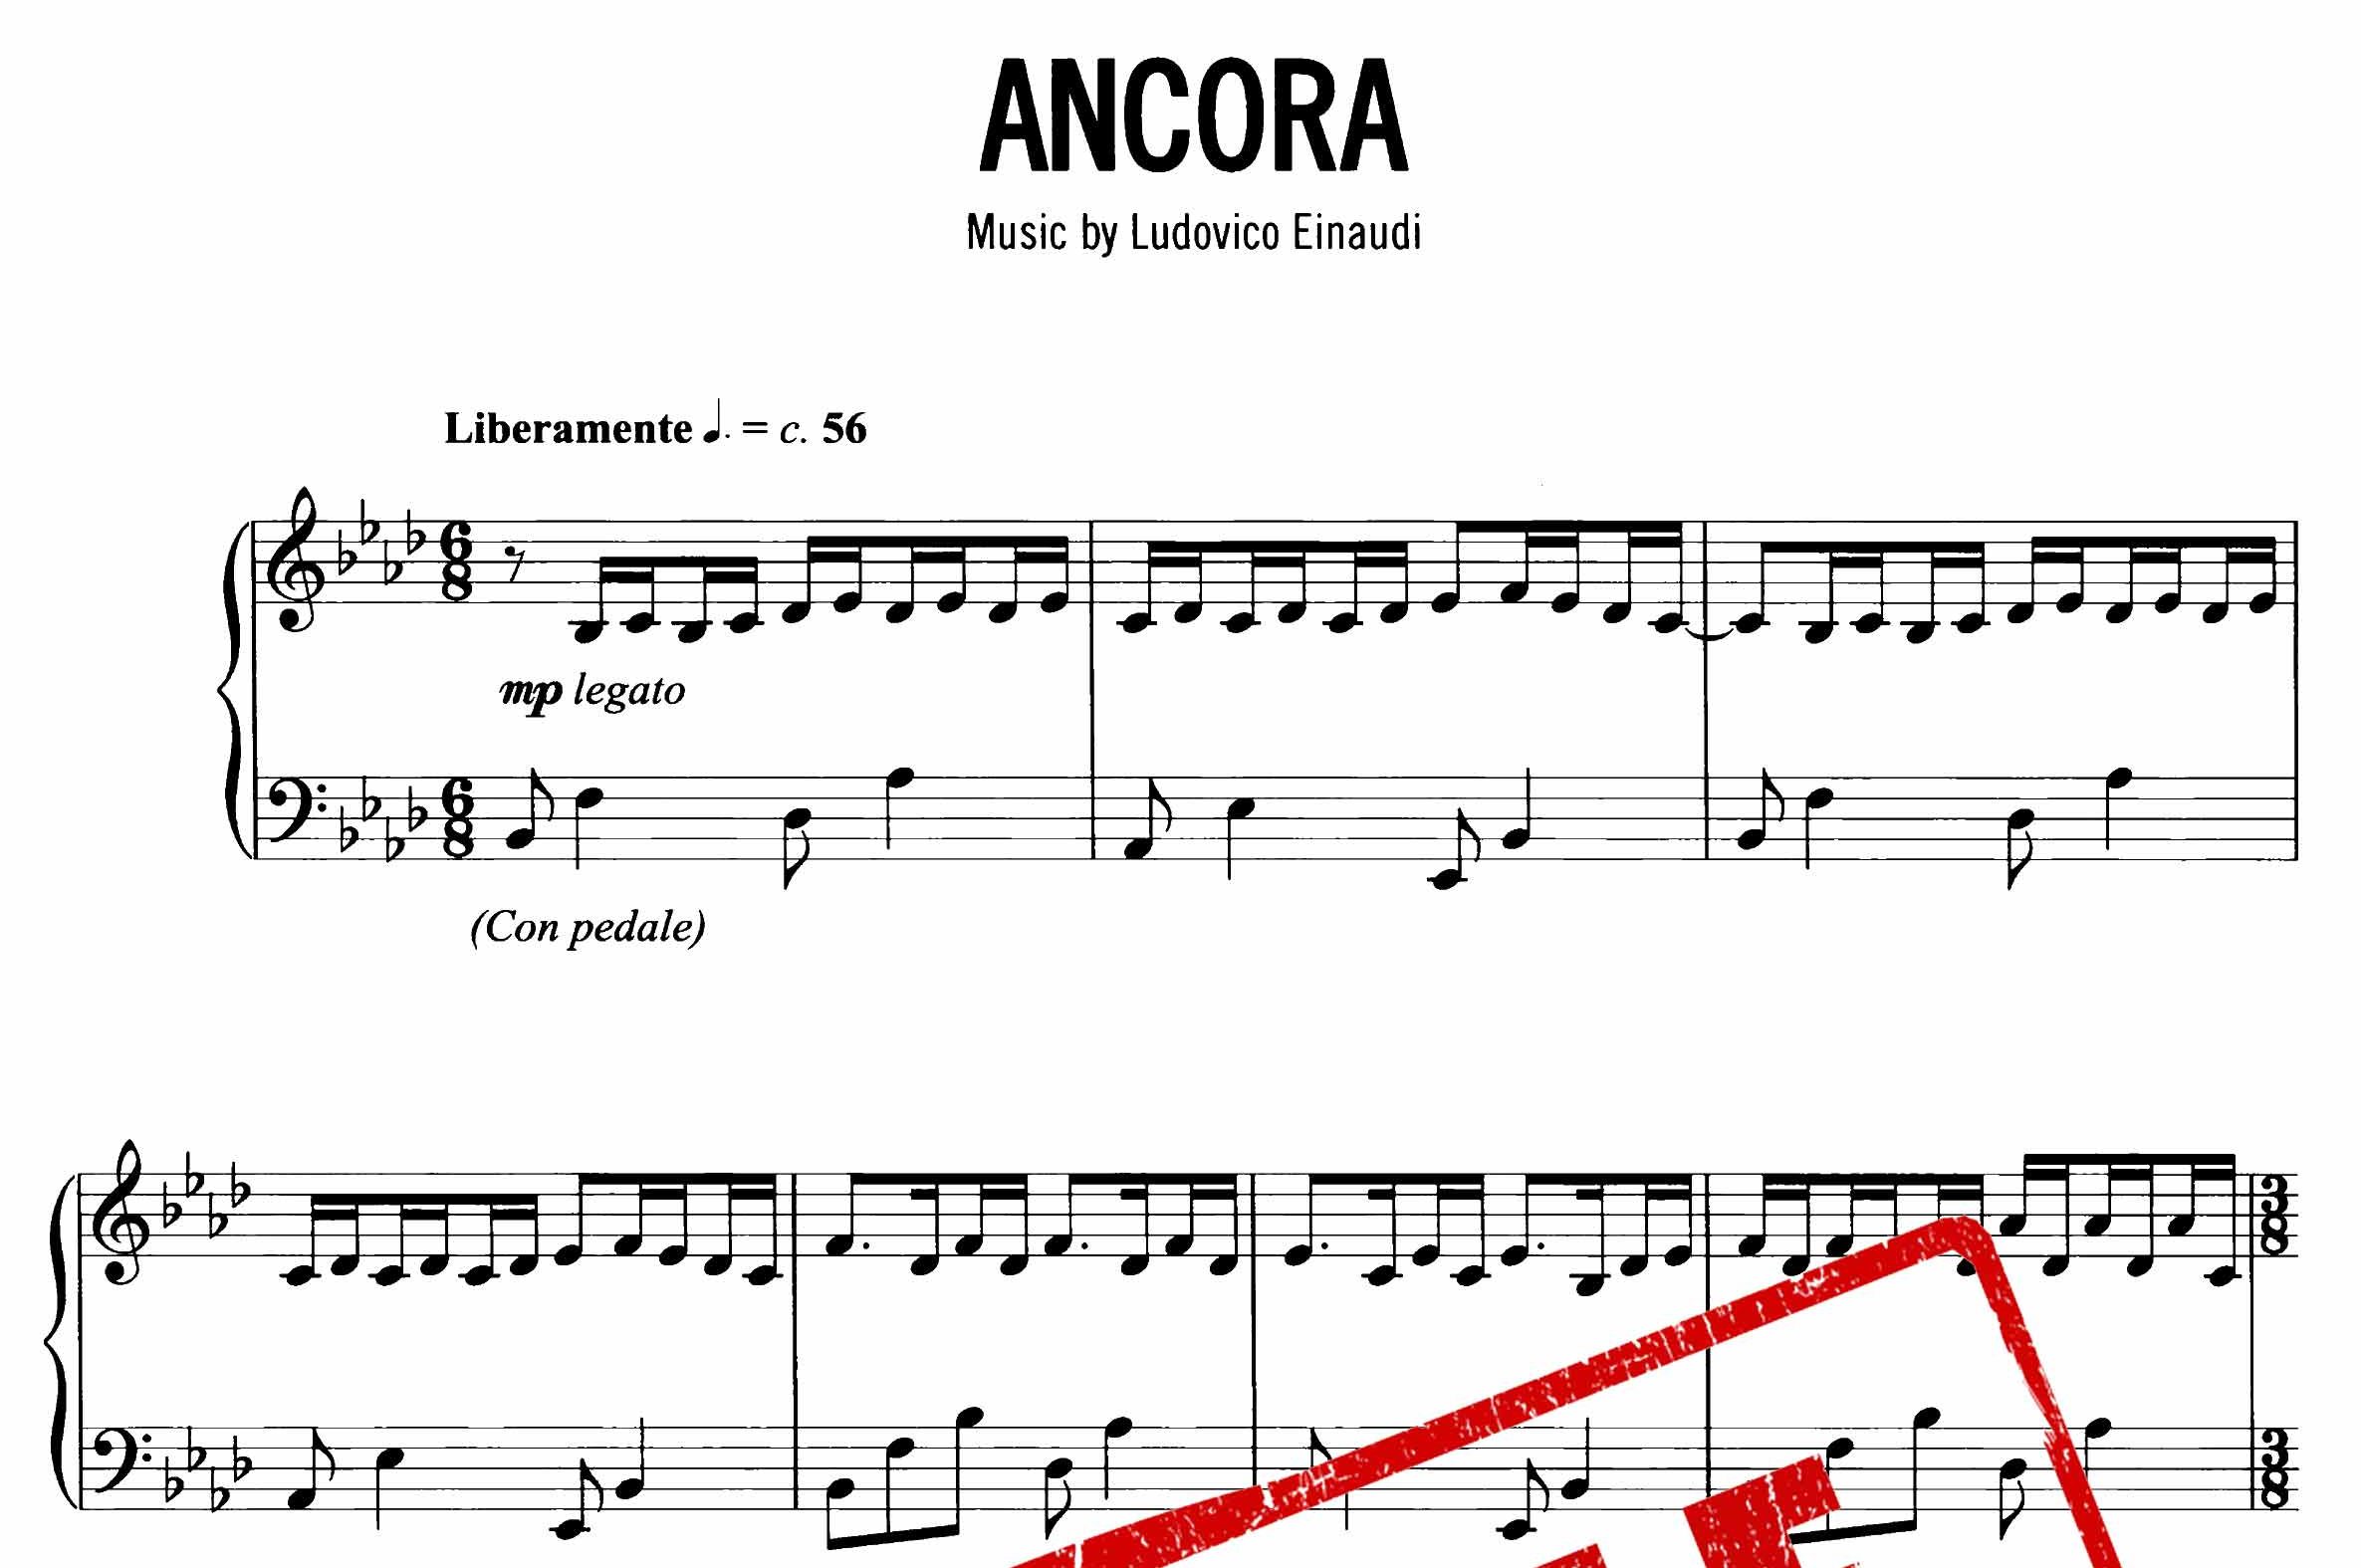 نت پیانوی Ancora از لودویکو اناودی